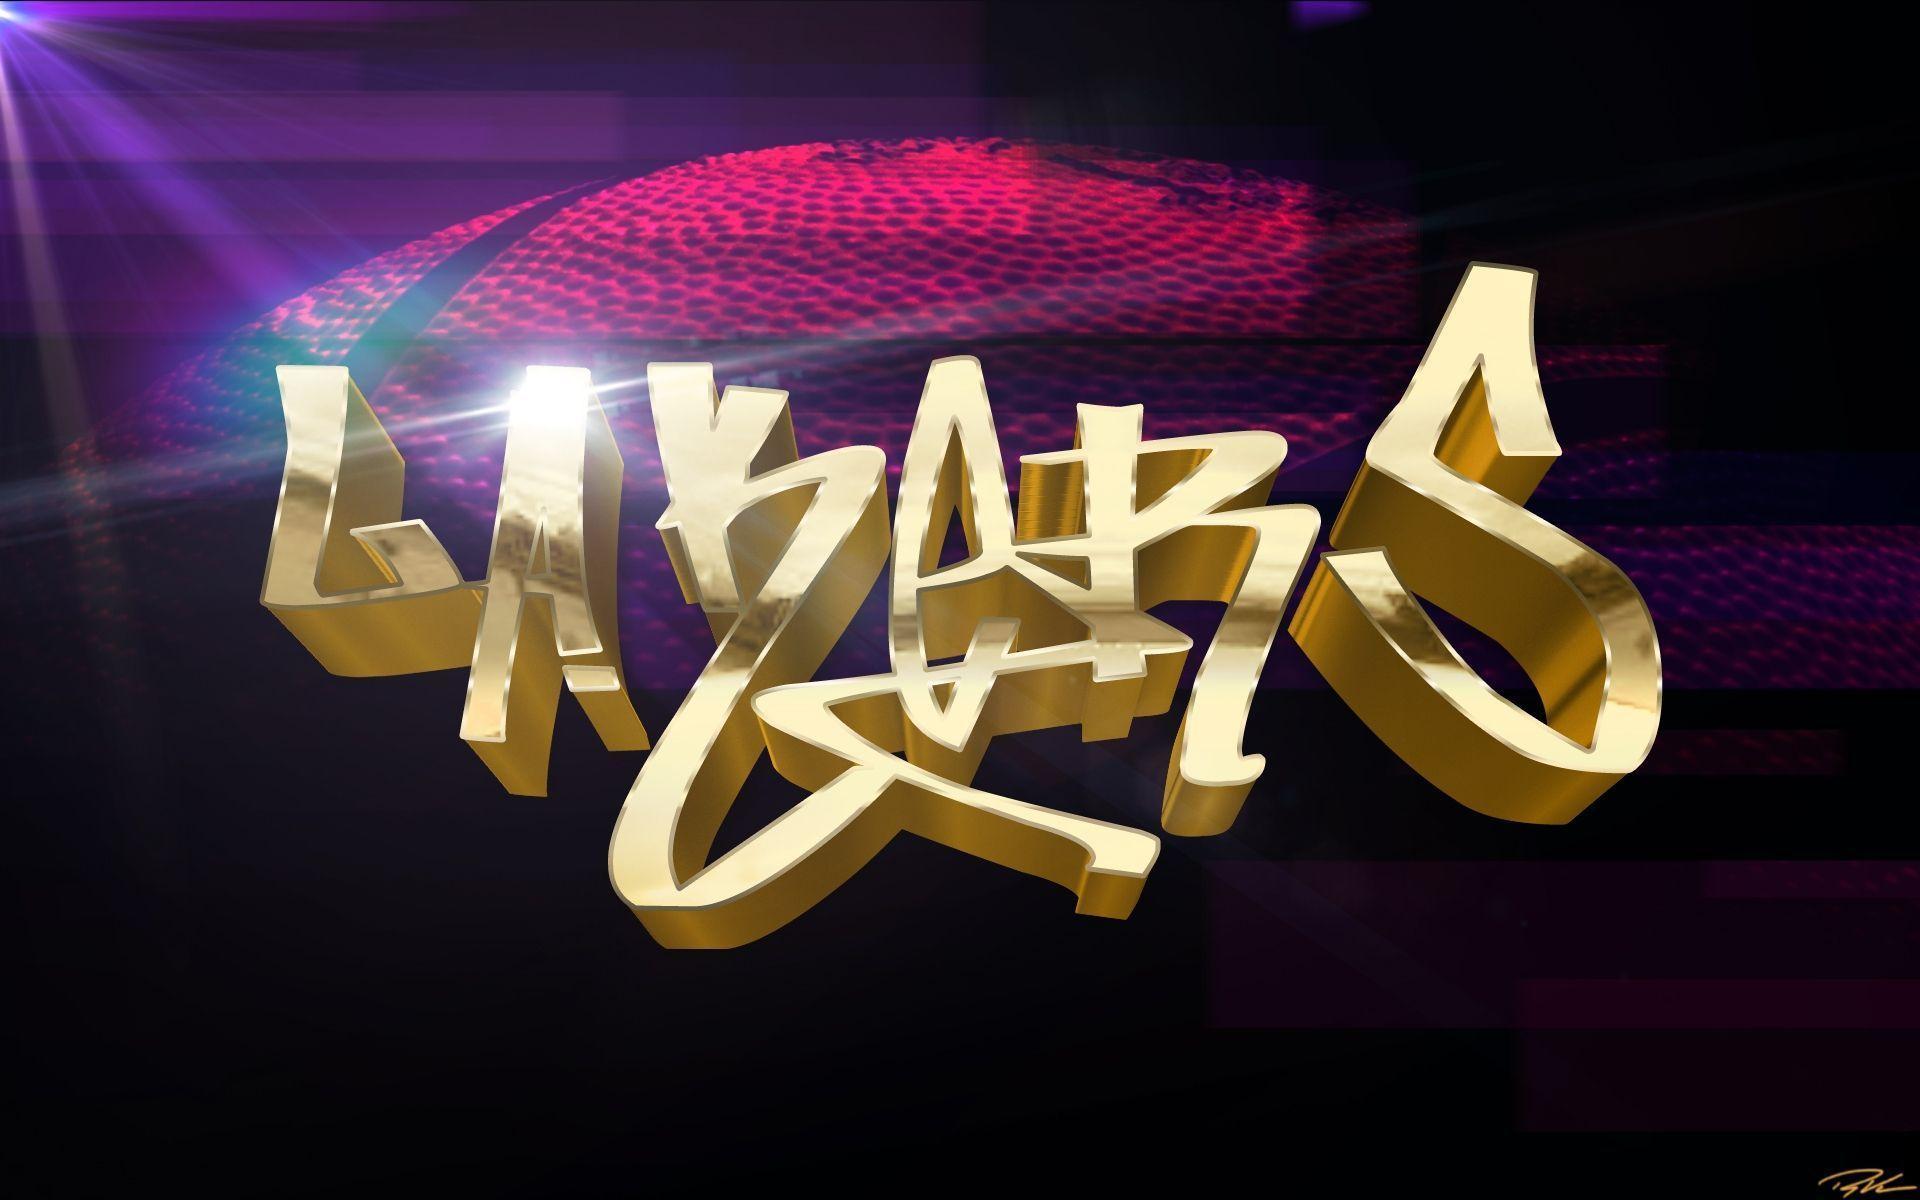 Lakers Logo 97 208359 High Definition Wallpaper. wallalay